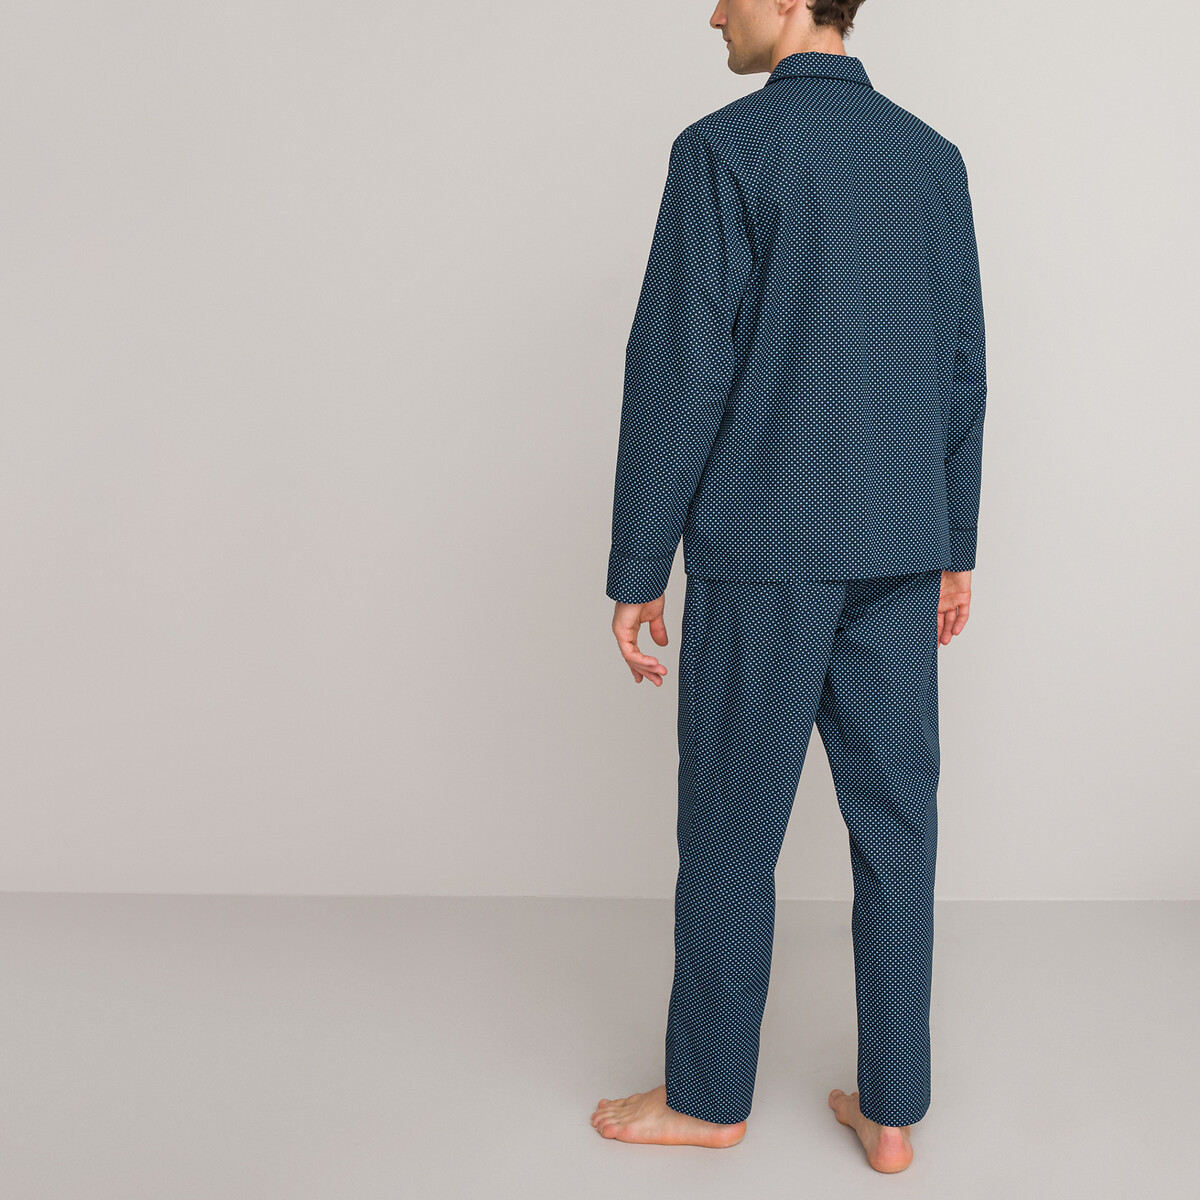 Пижама LA REDOUTE COLLECTIONS Пижама С принтом из биохлопка S синий, размер S - фото 4